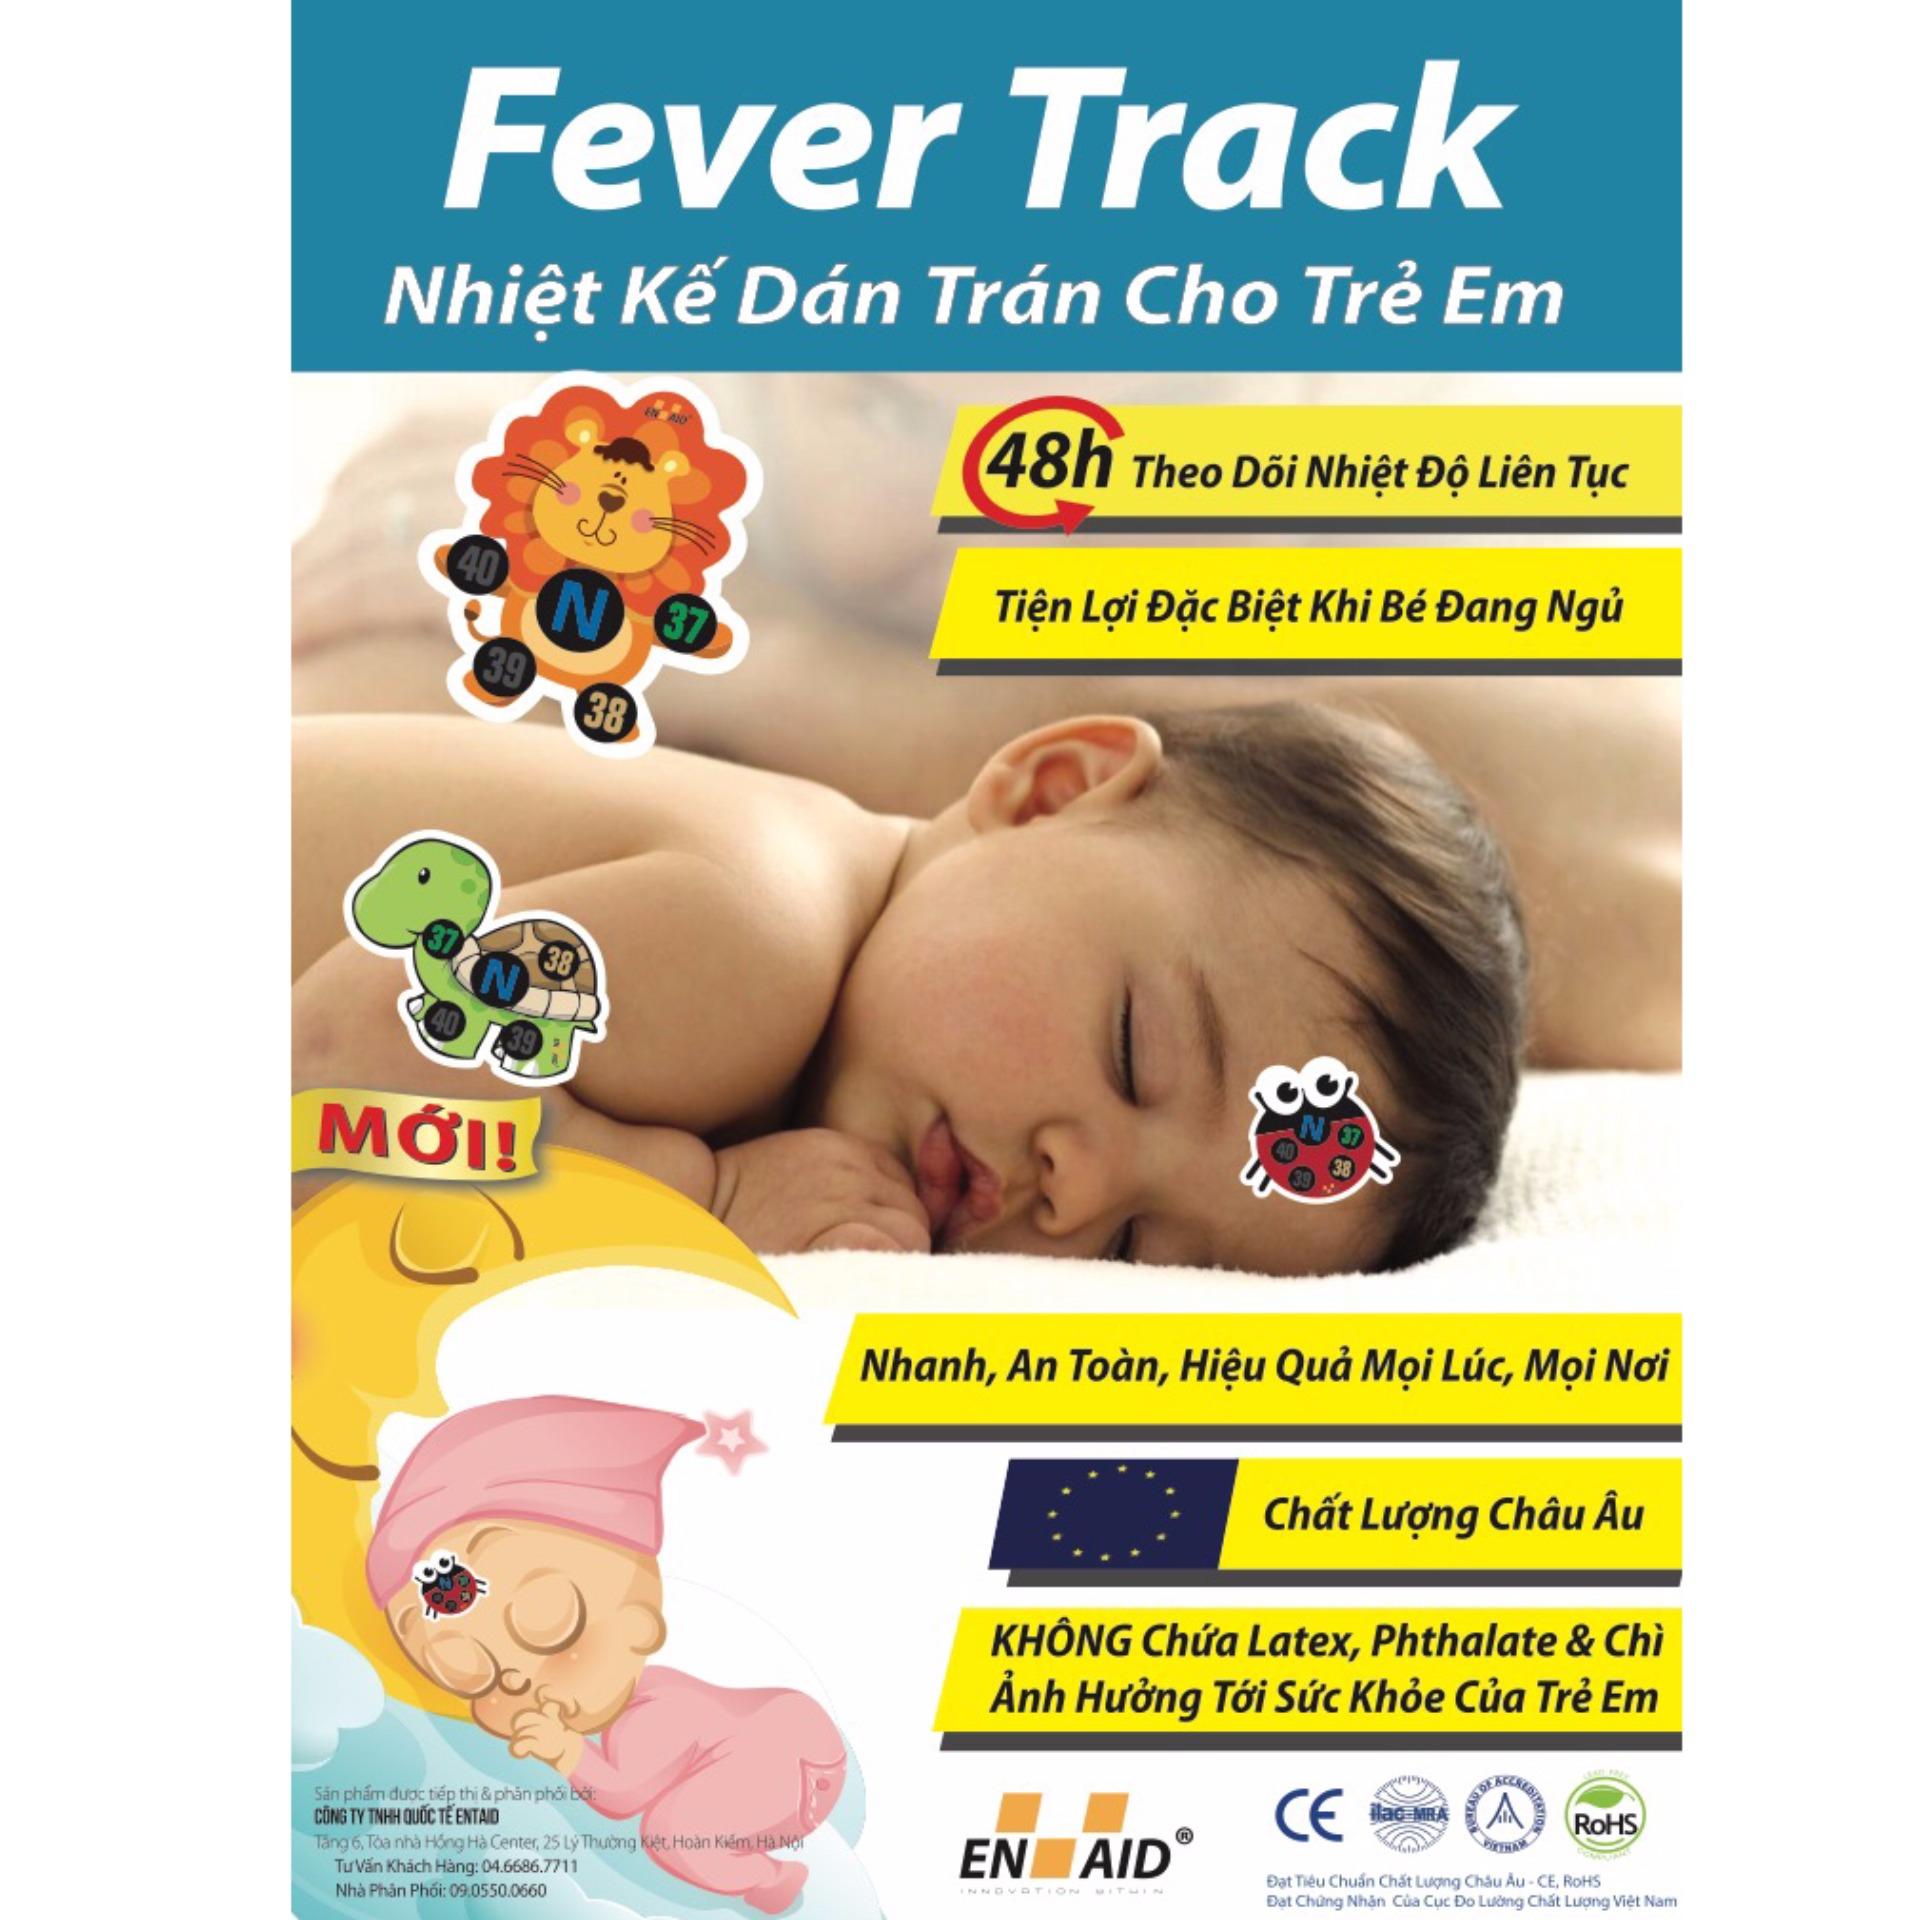 Nhiệt kế dán trán cho trẻ em - FeverTrack